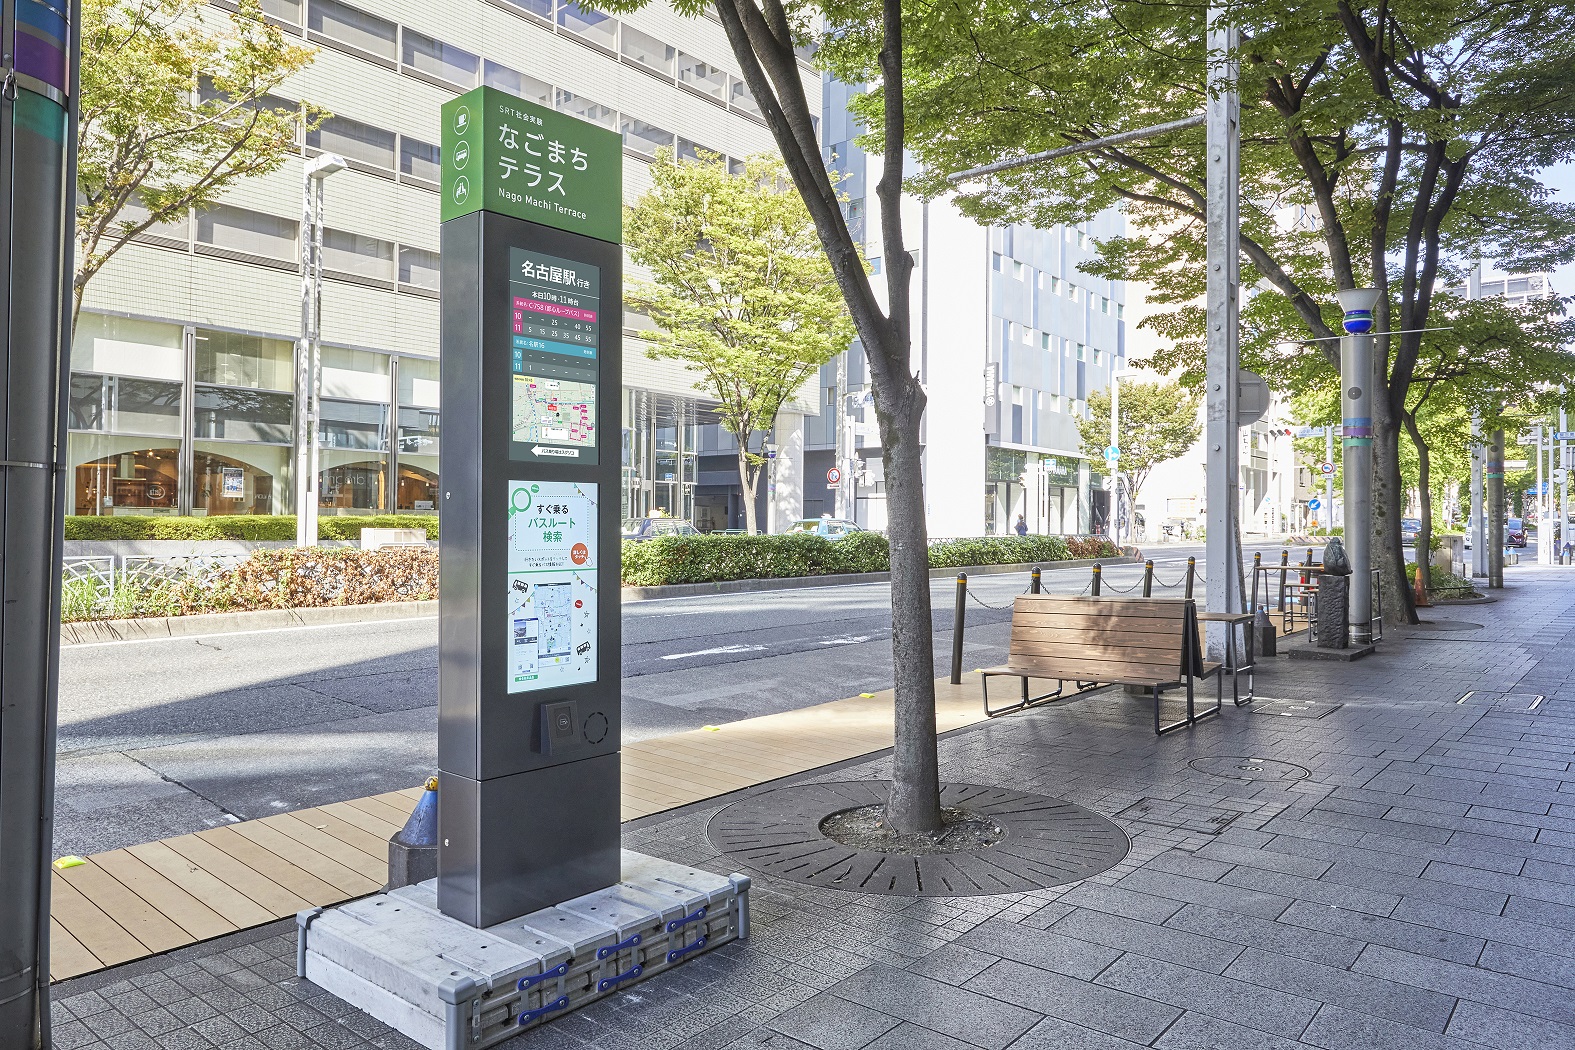 名古屋市、路面公共交通機関のシステム導入を開始[ニュース]